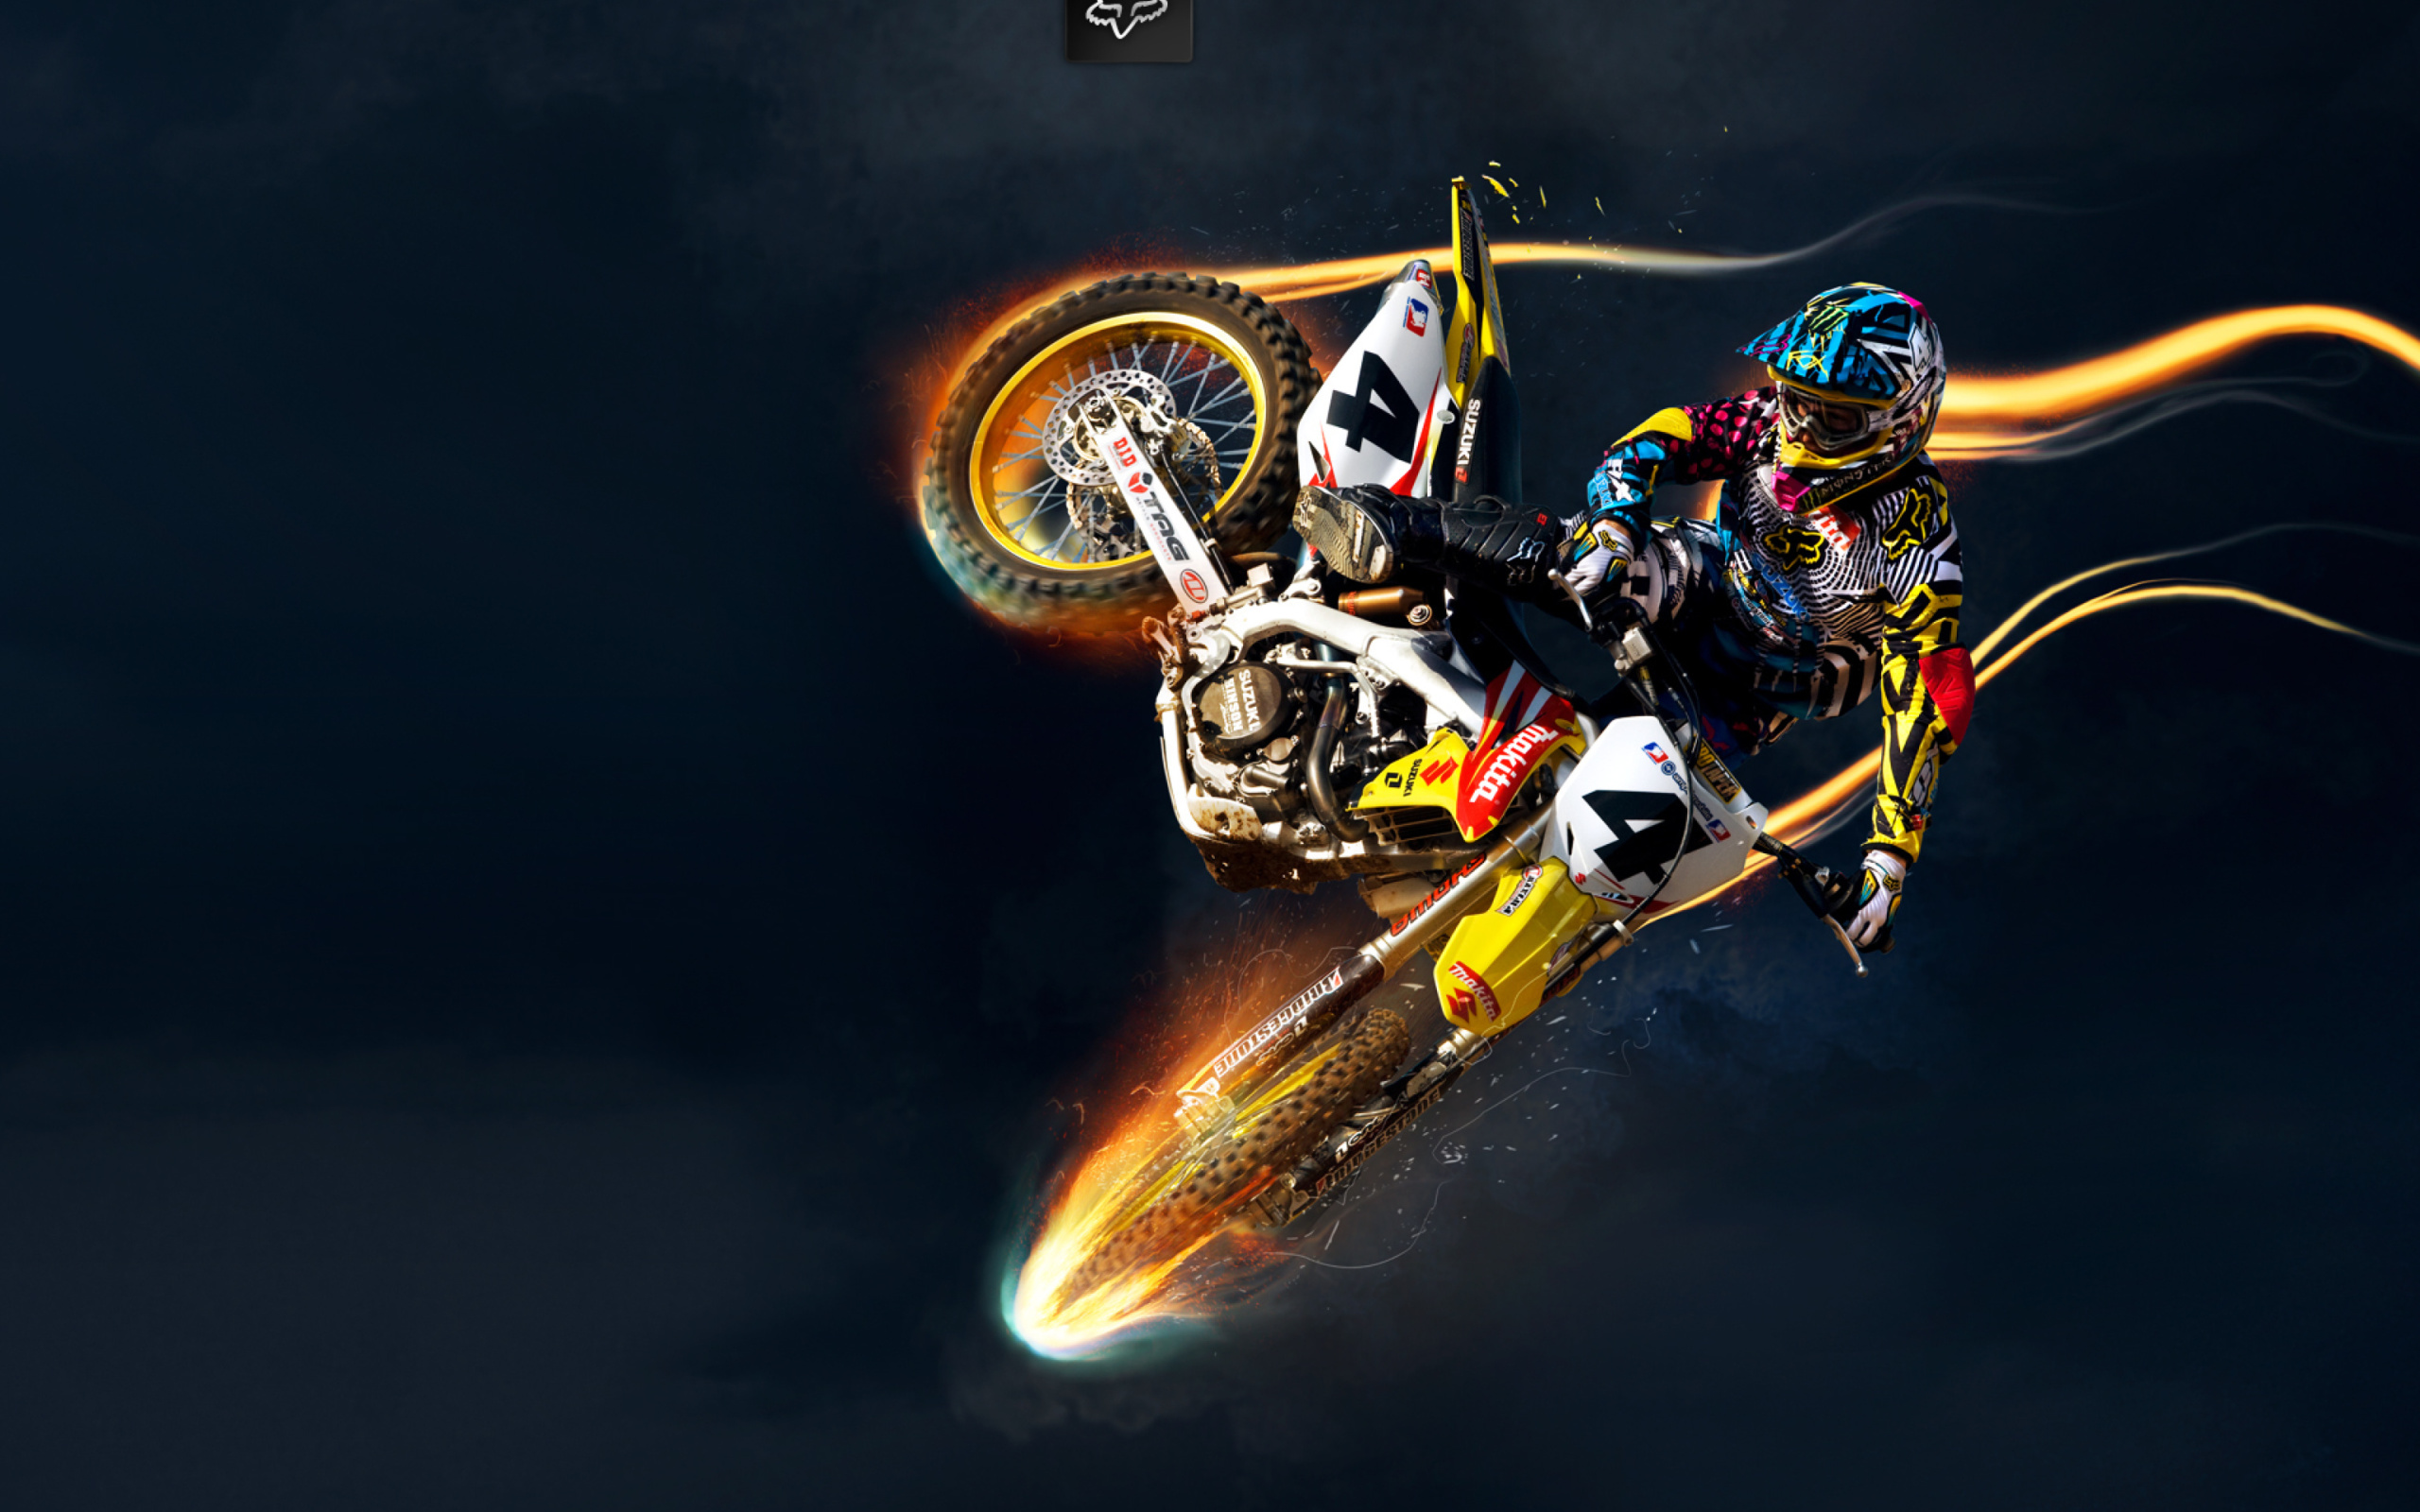 Fondo de pantalla Freestyle Motocross 2560x1600